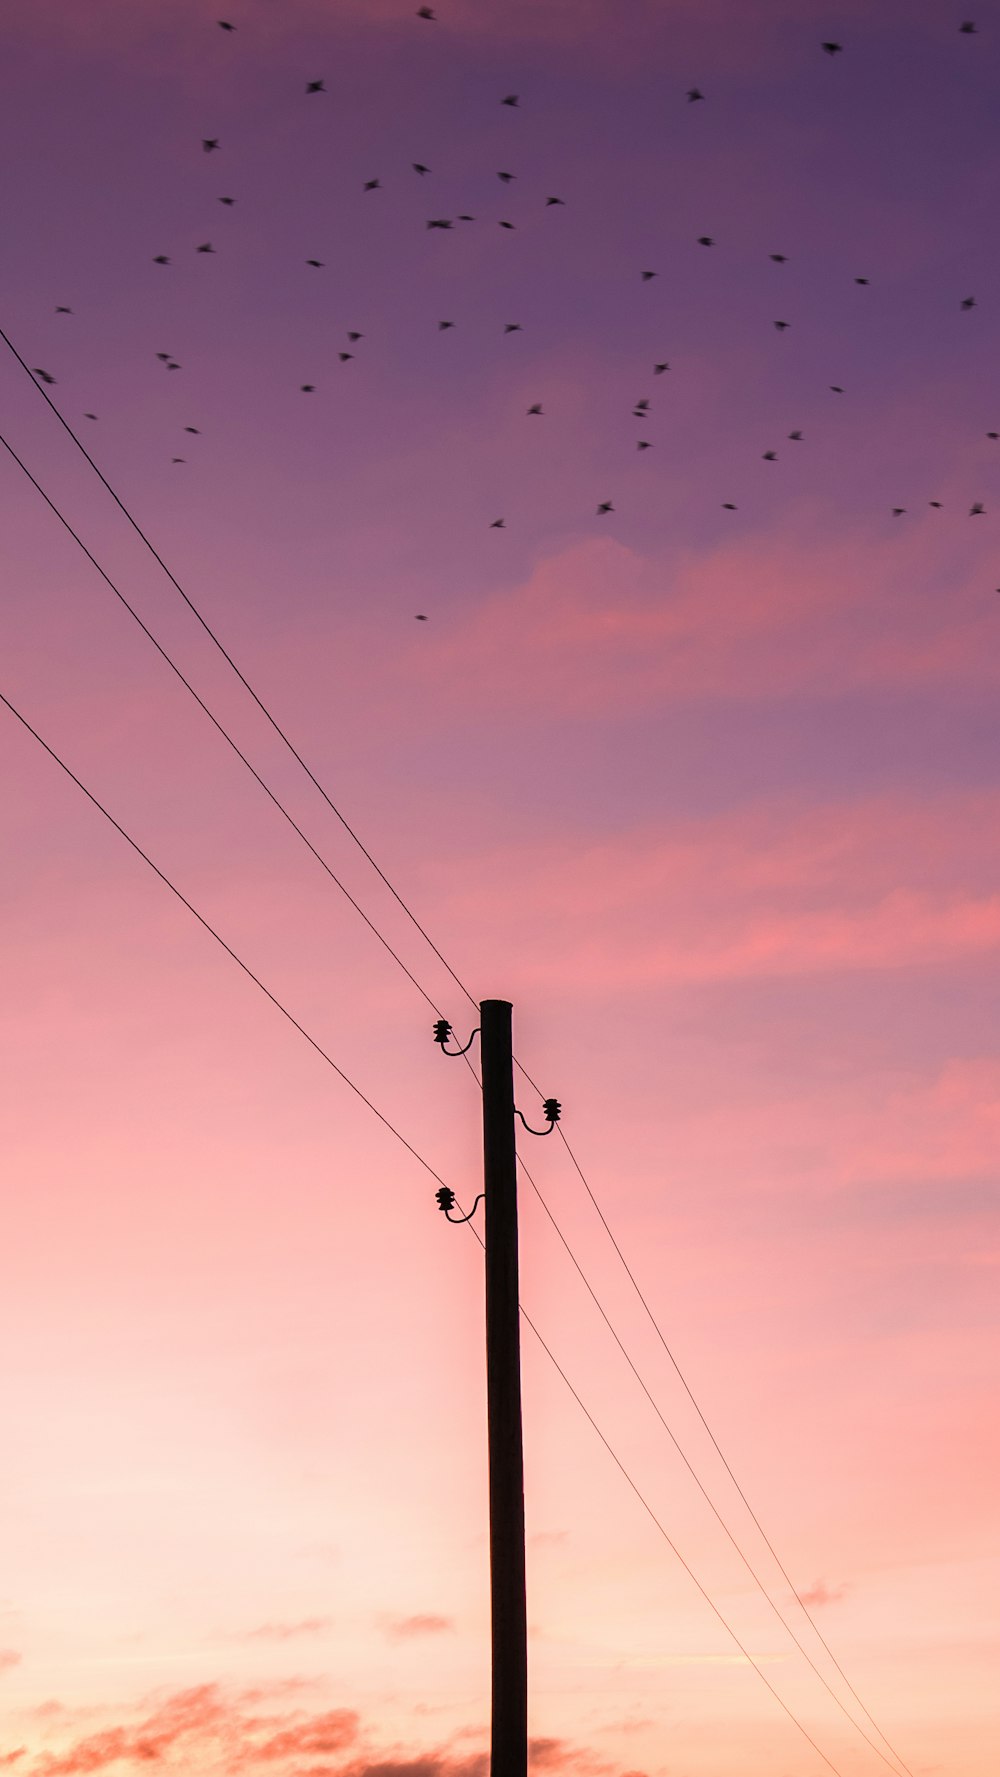 Vogelschwarm fliegt über den Strommast